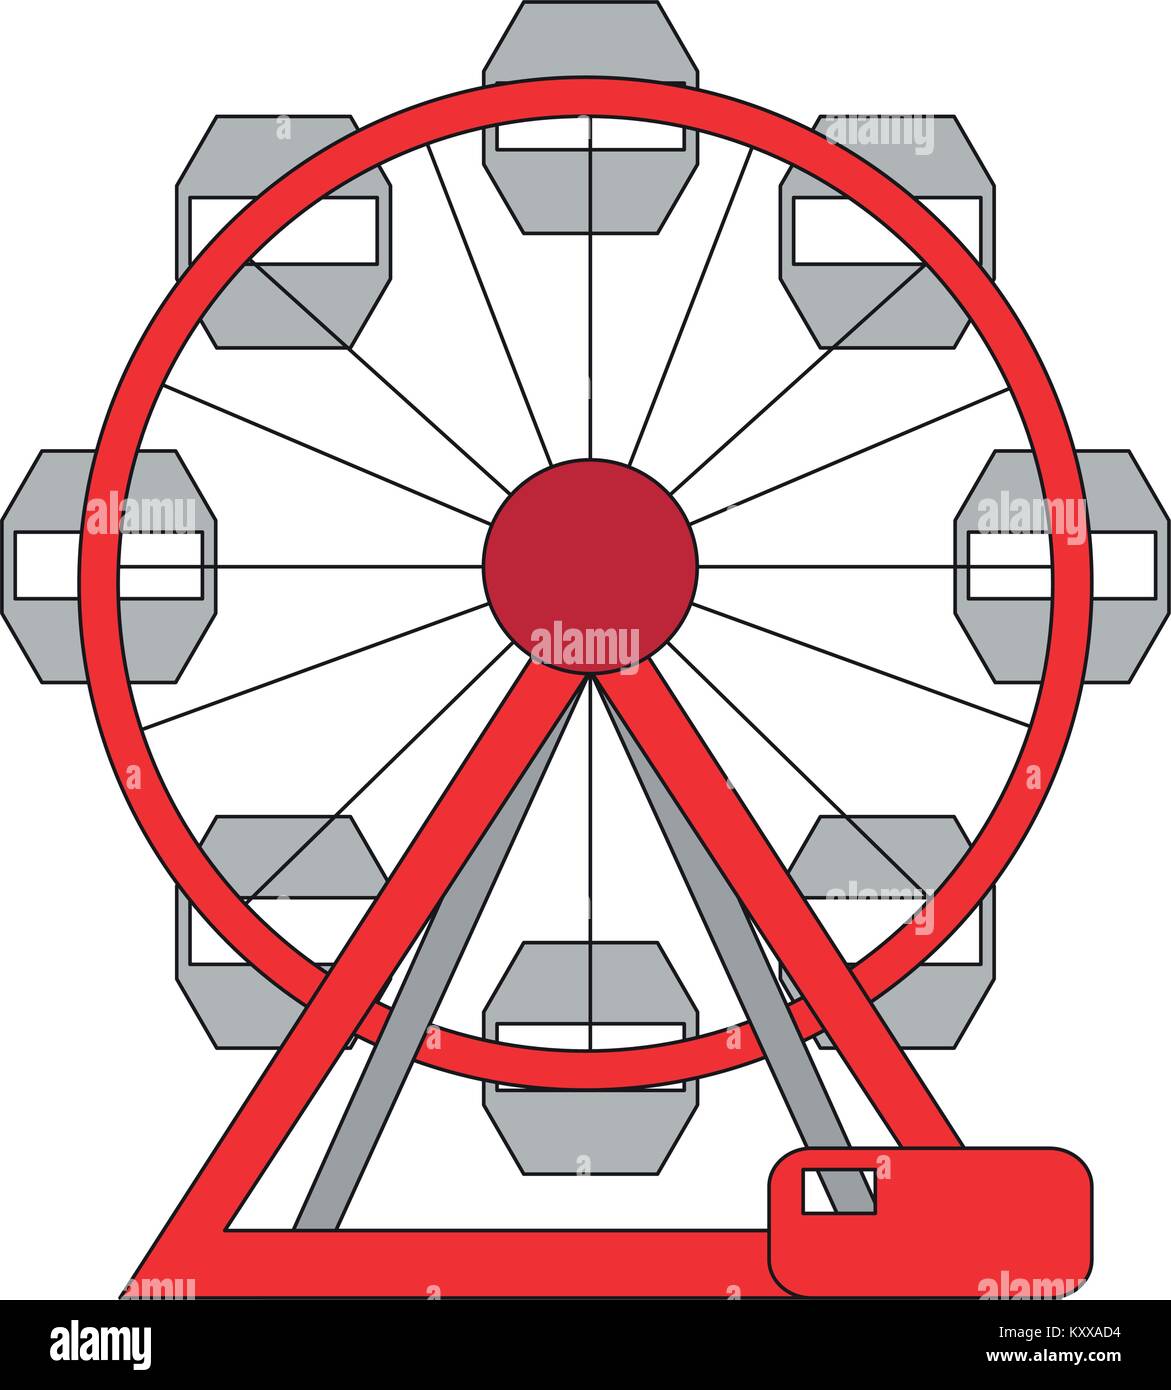 Ferris wheel icon Stock Vector